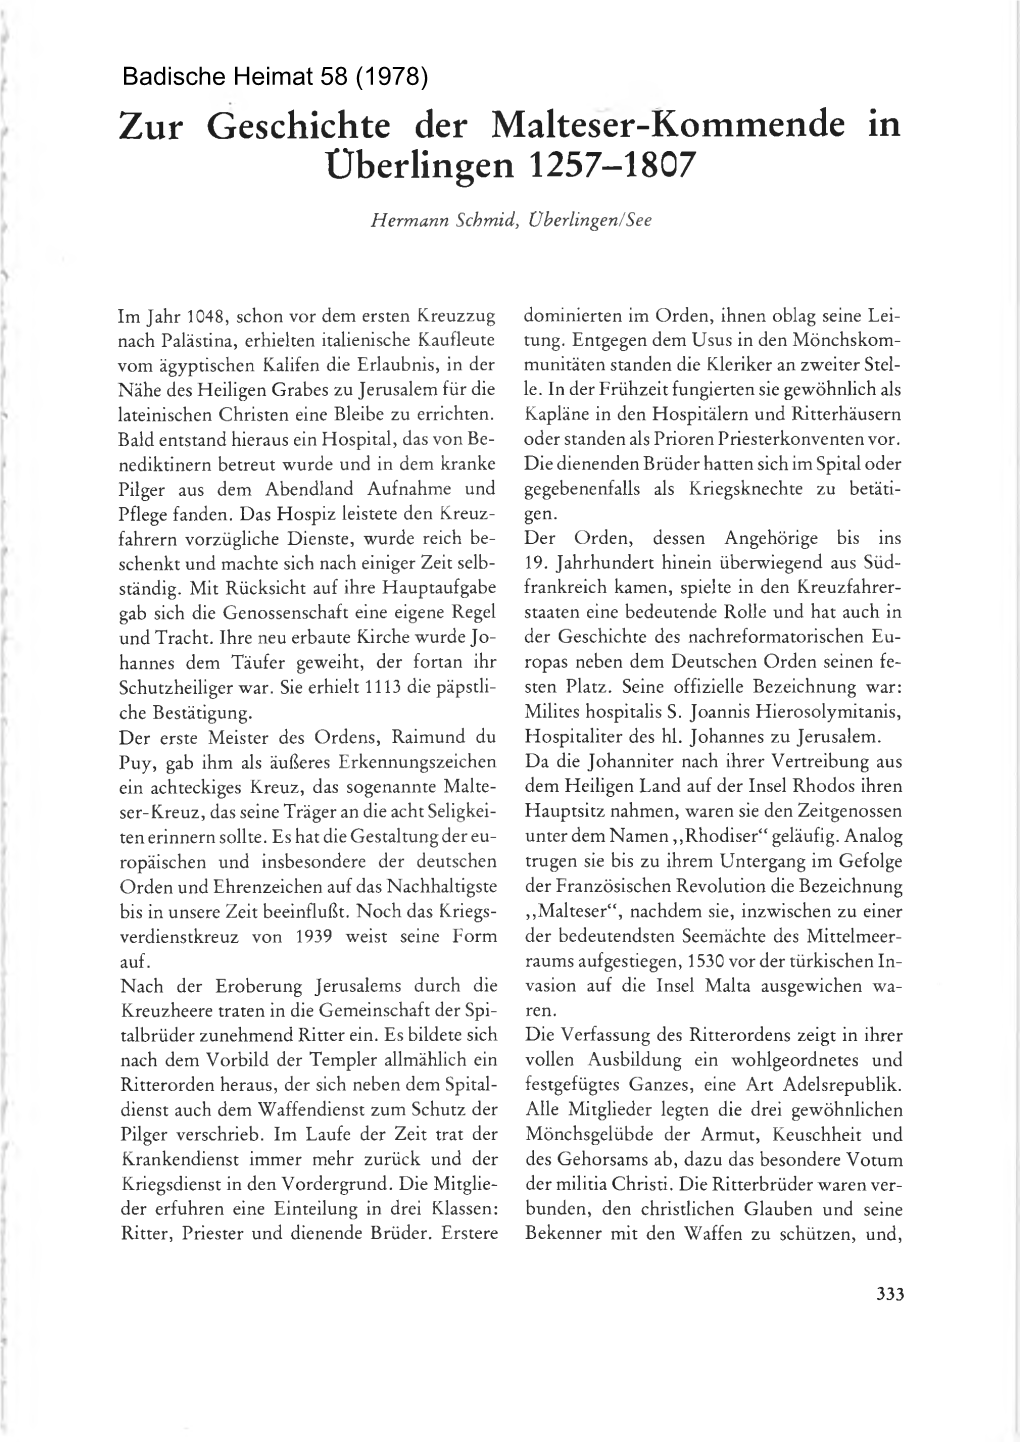 Zur Geschichte Der Malteser-Kommende in Uberlingen 1257-1807